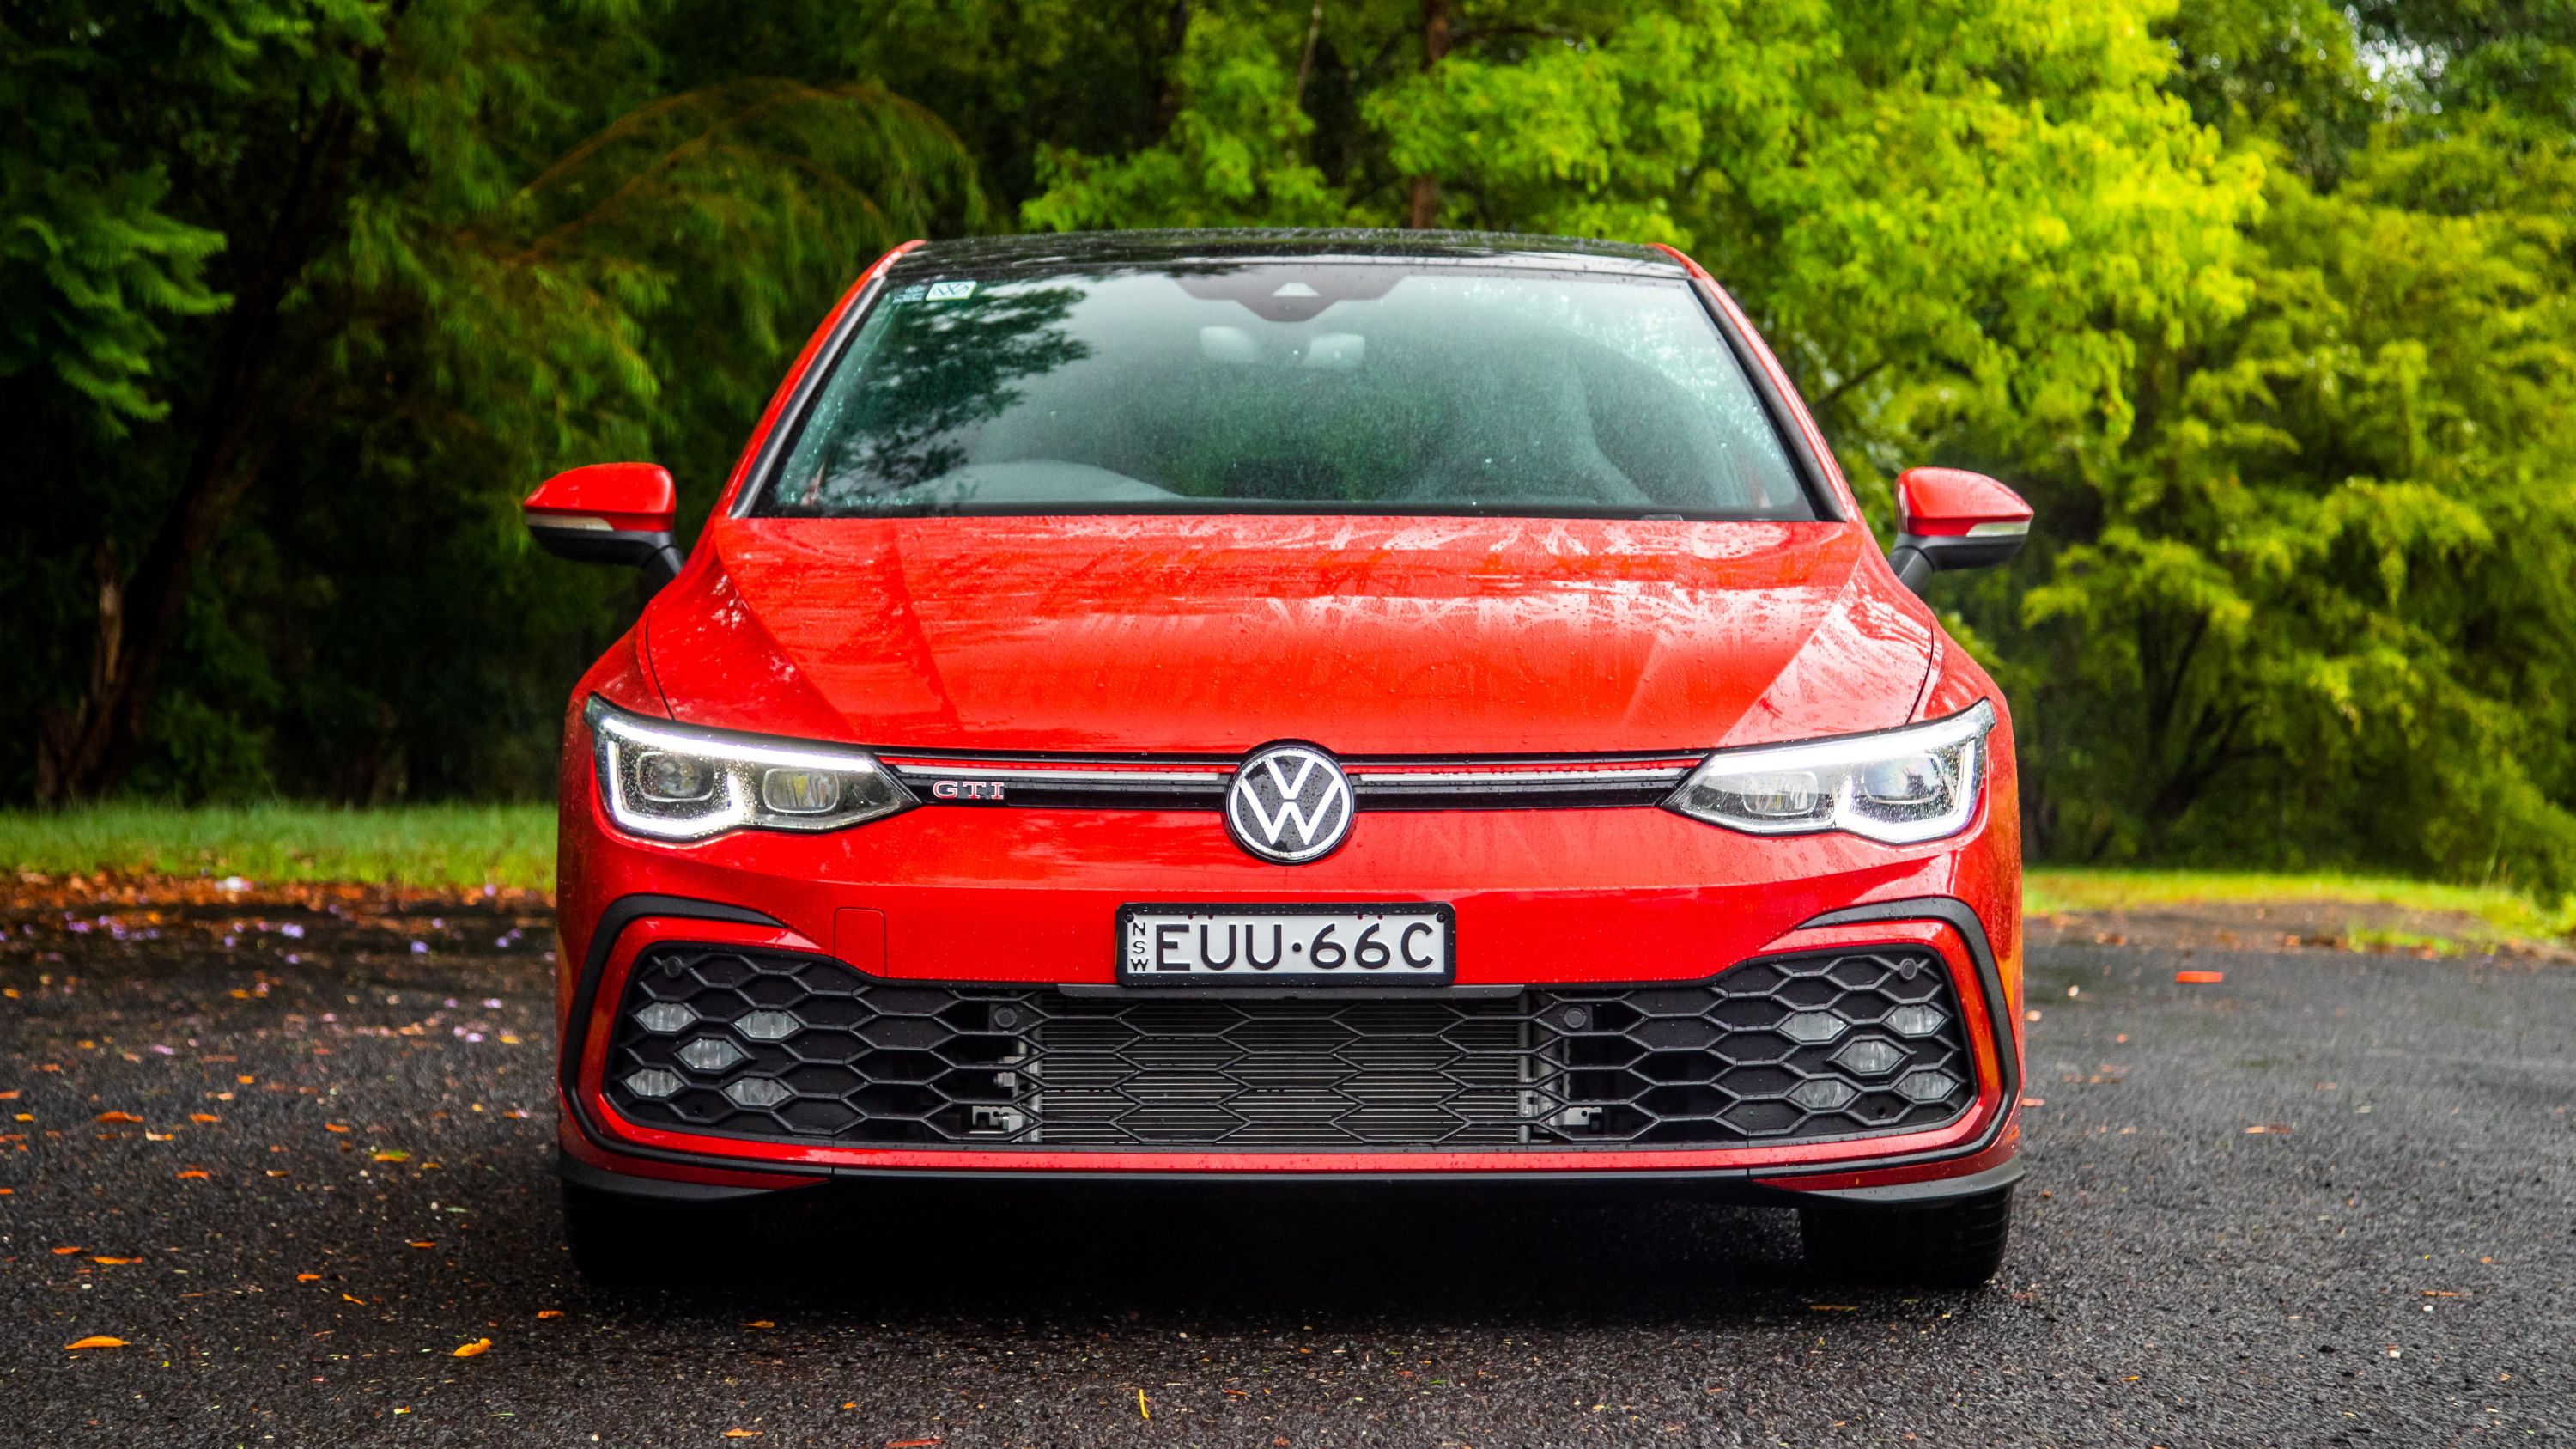 Volkswagen Golf 8 first drive: Golf goes upmarket